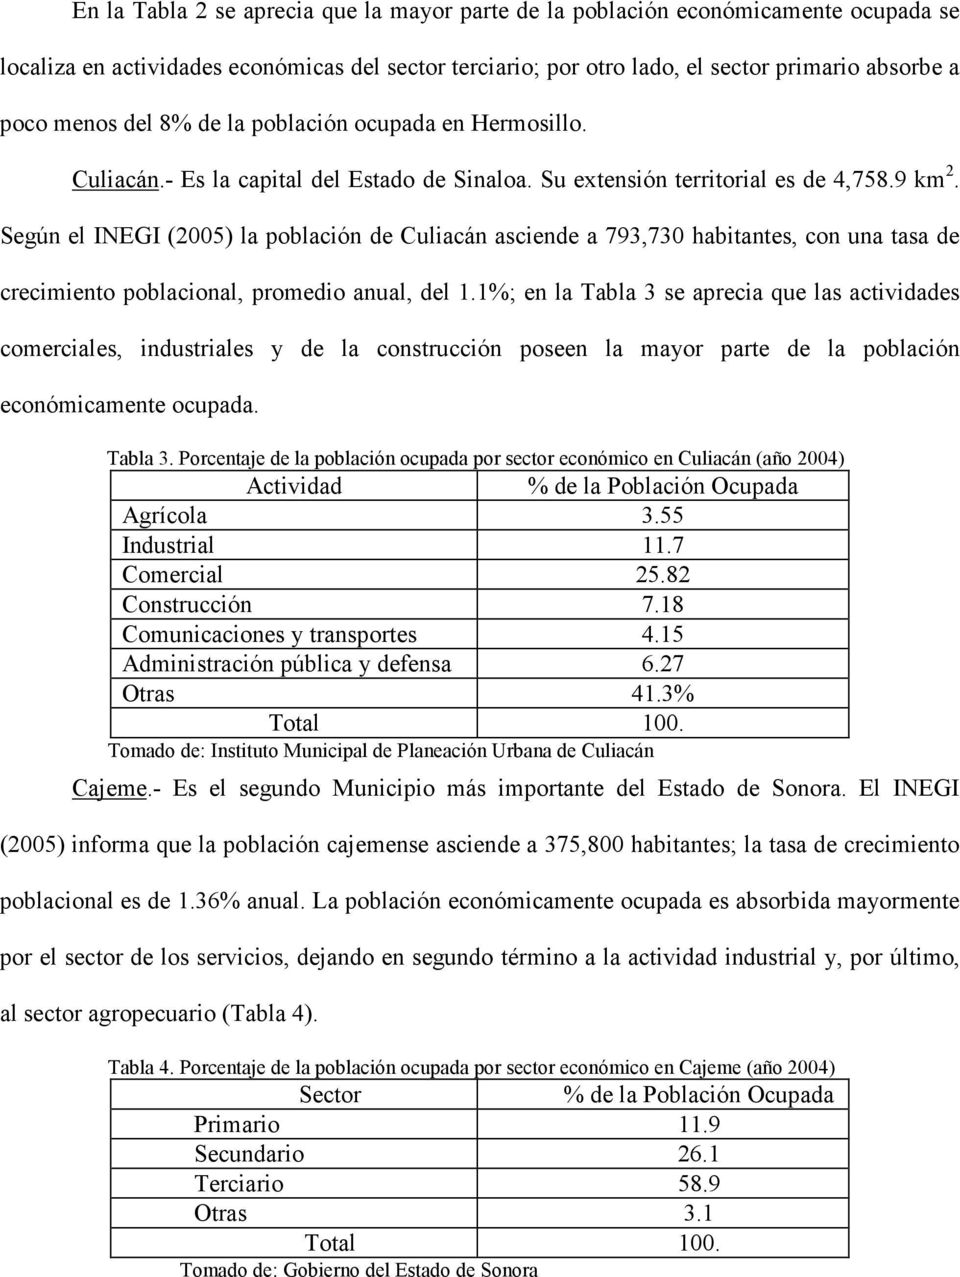 Según el INEGI (2005) la población de Culiacán asciende a 793,730 habitantes, con una tasa de crecimiento poblacional, promedio anual, del 1.